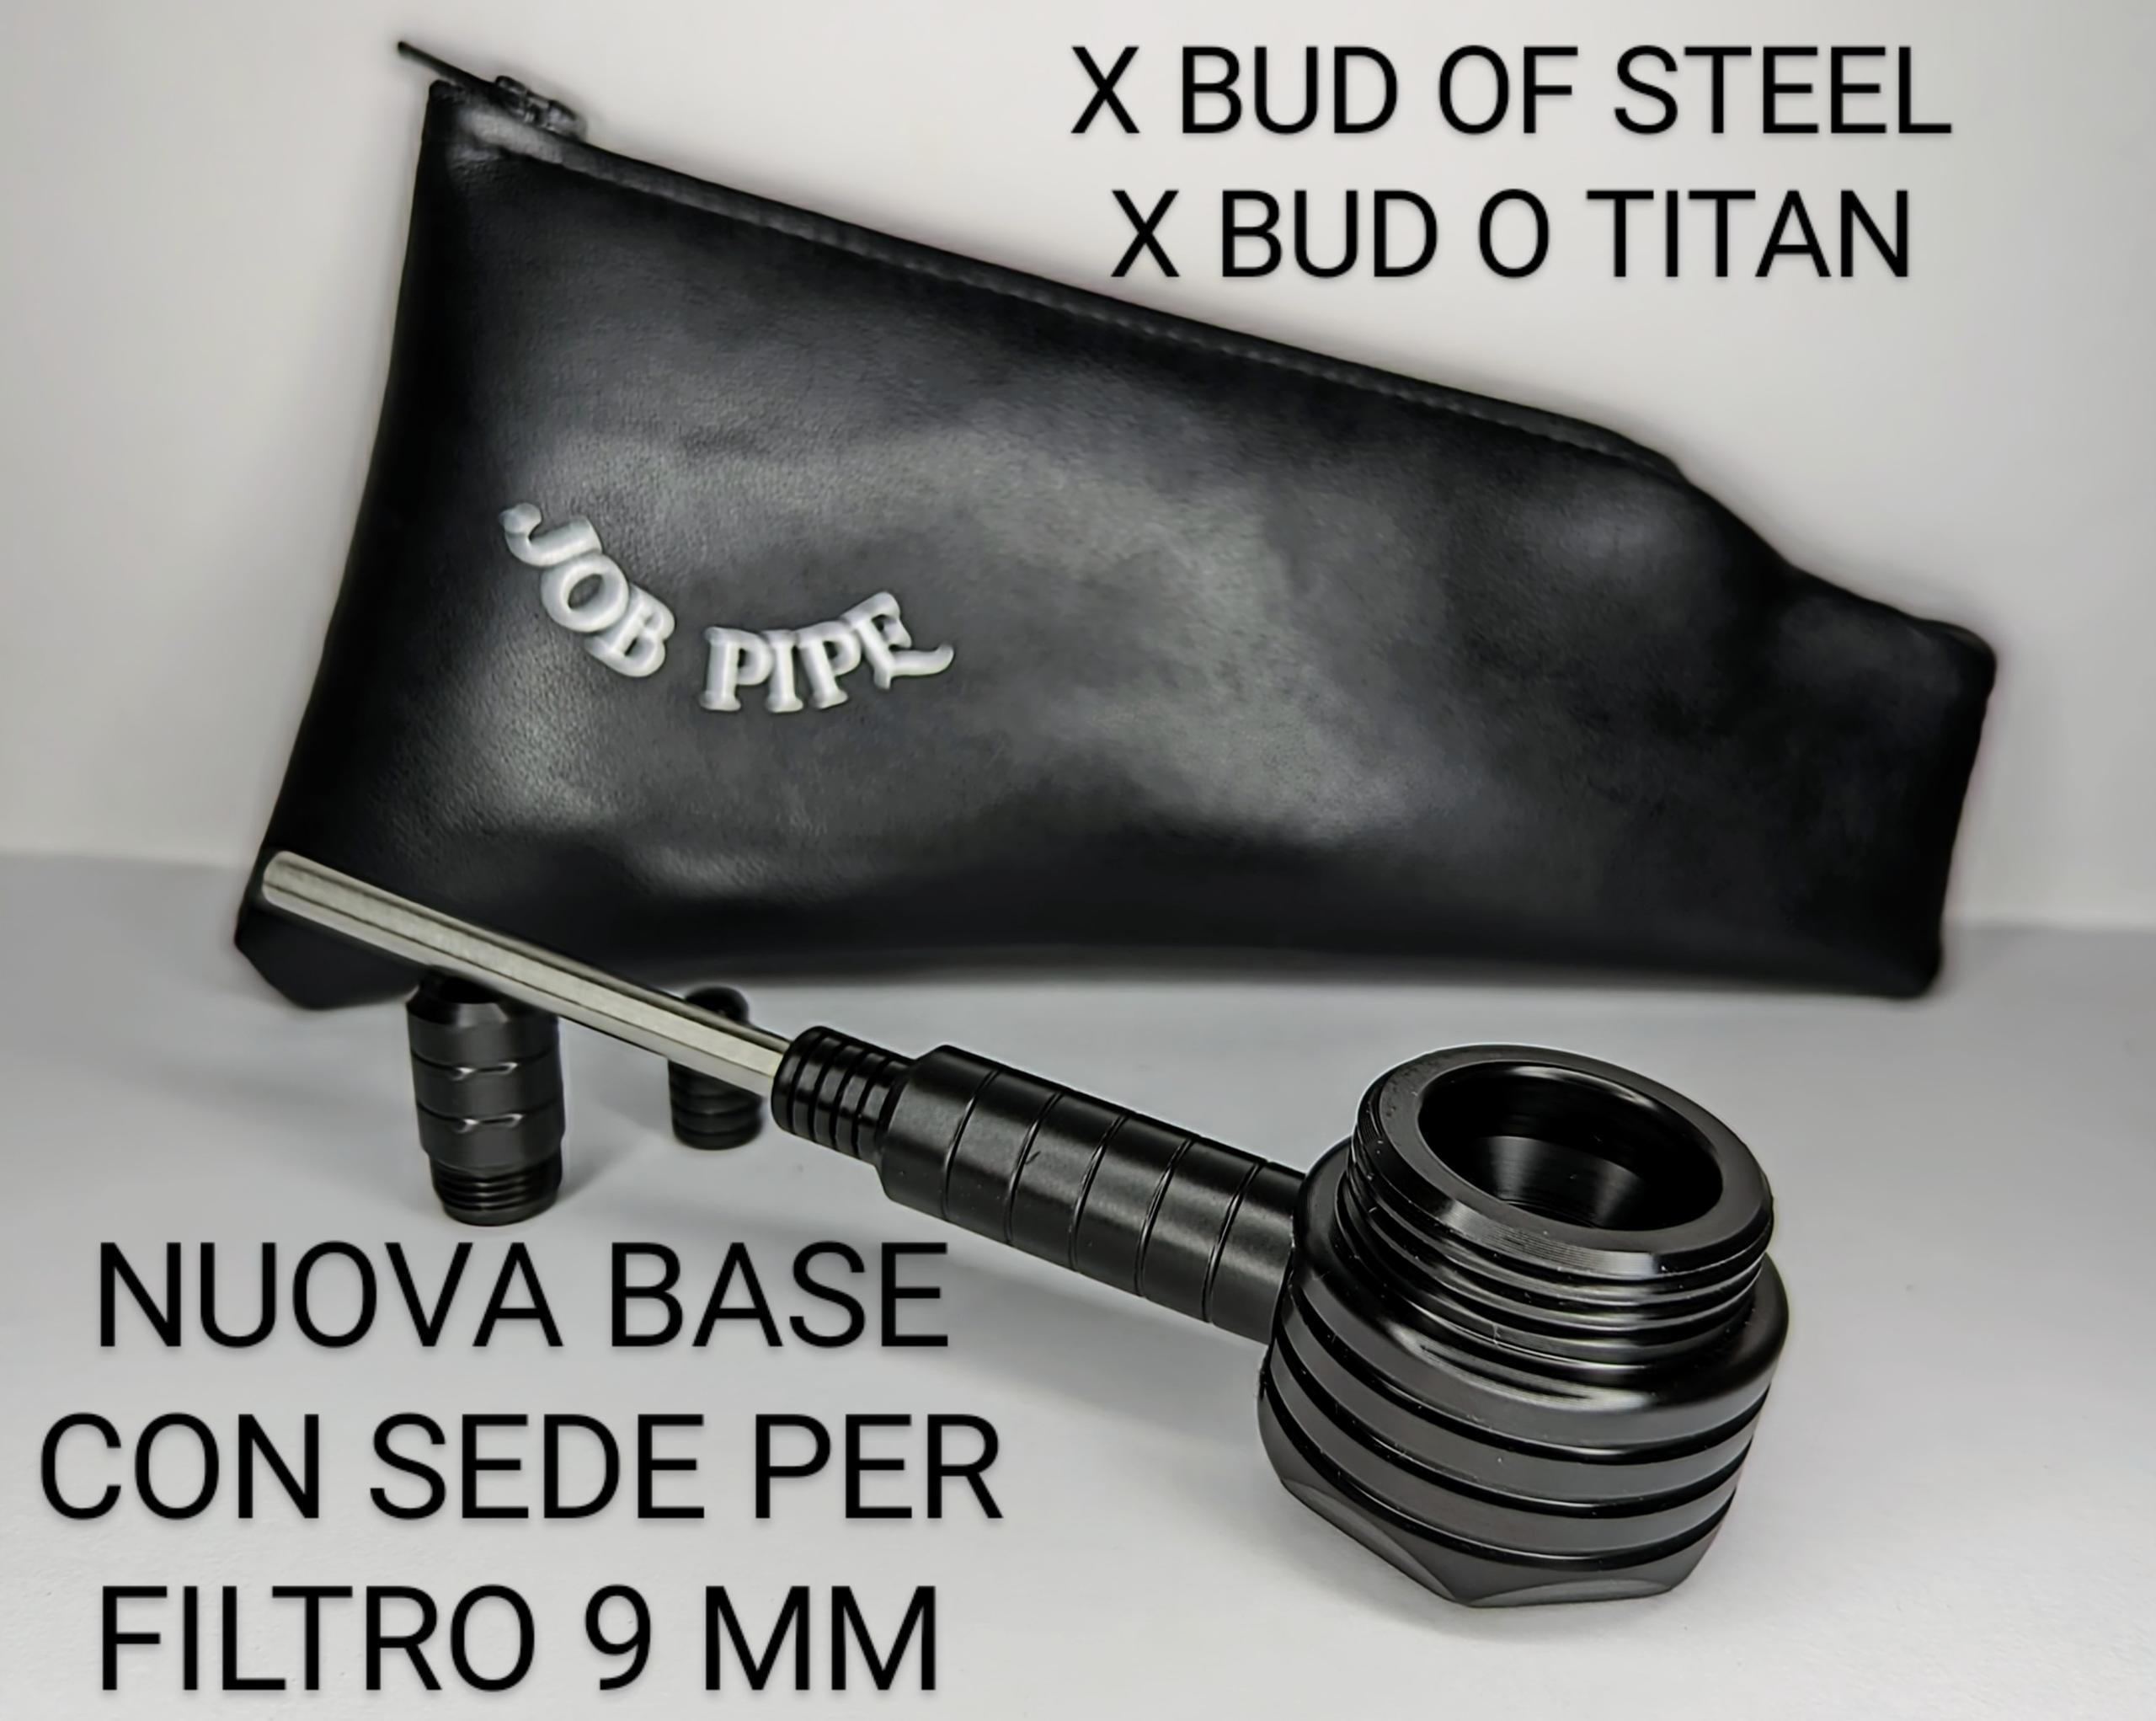 Delrin Black Base Con Sede Per Filtro 9 mm per Bud Of Steel - Titan